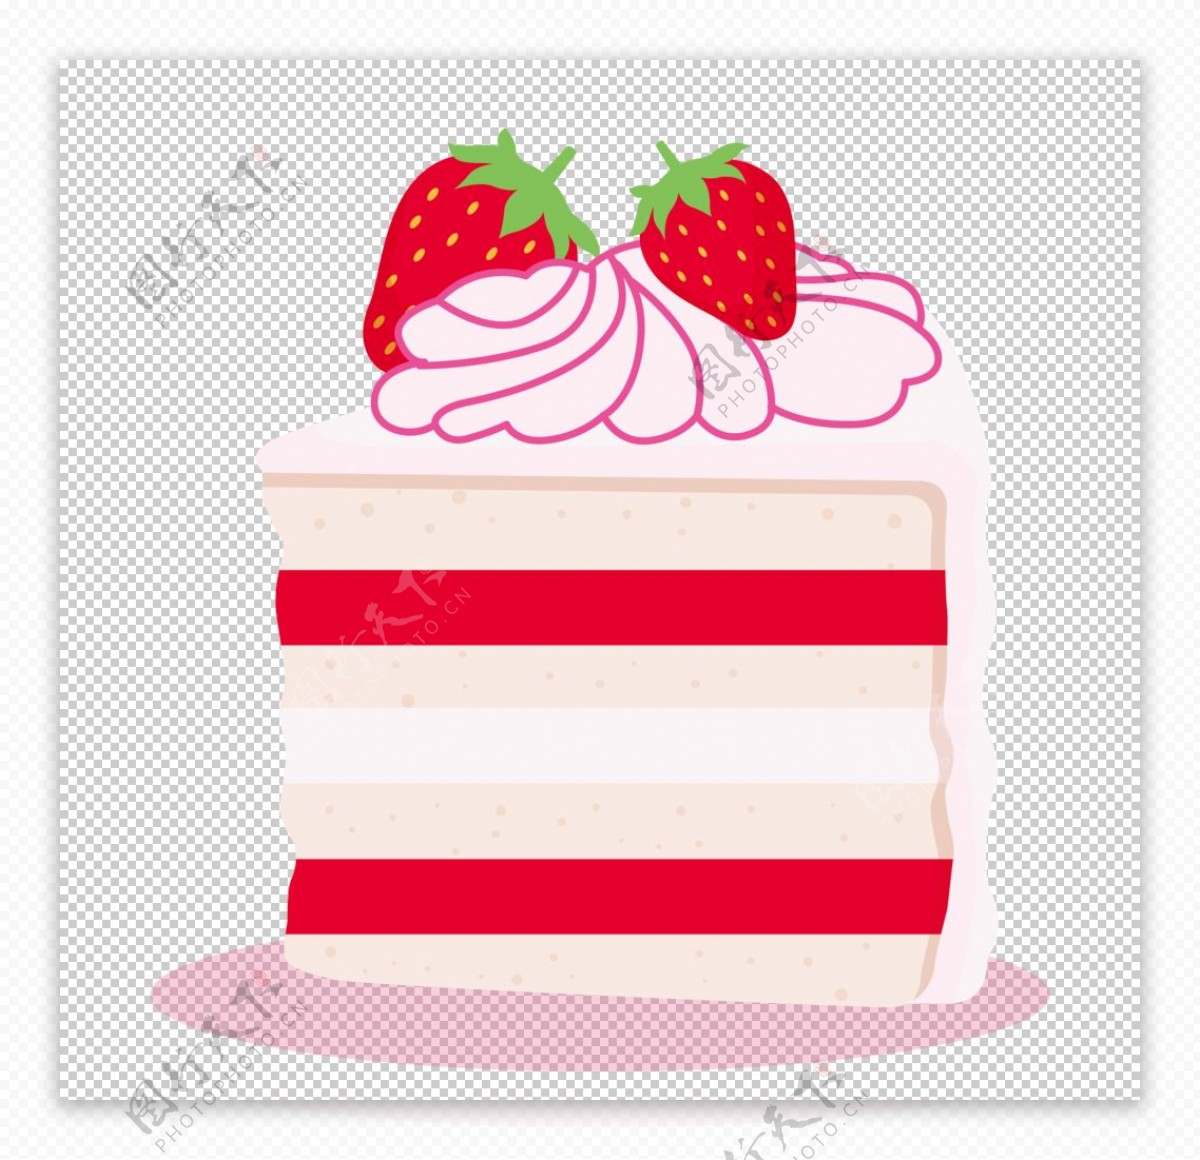 卡通白色生日蛋糕圖案素材 | PNG和向量圖 | 透明背景圖片 | 免費下载 - Pngtree